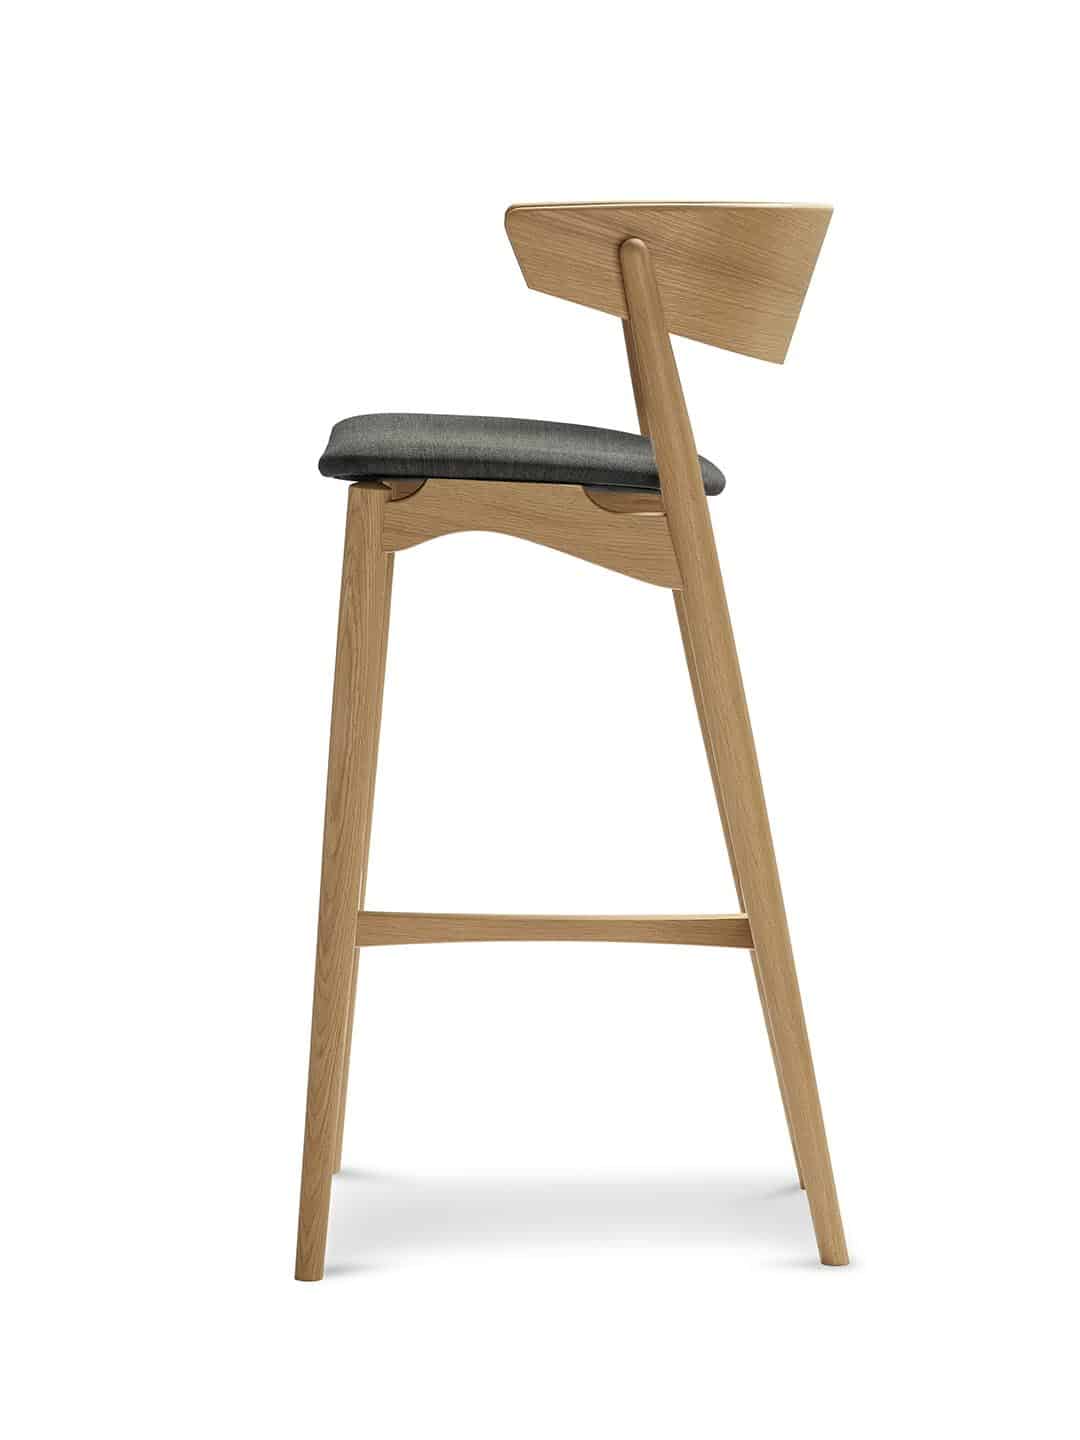 Барный стул Sibast №7 в стиле лофт дуб, покрытый лаком с белым пигментом/темно-серая шерсть на белом фоне